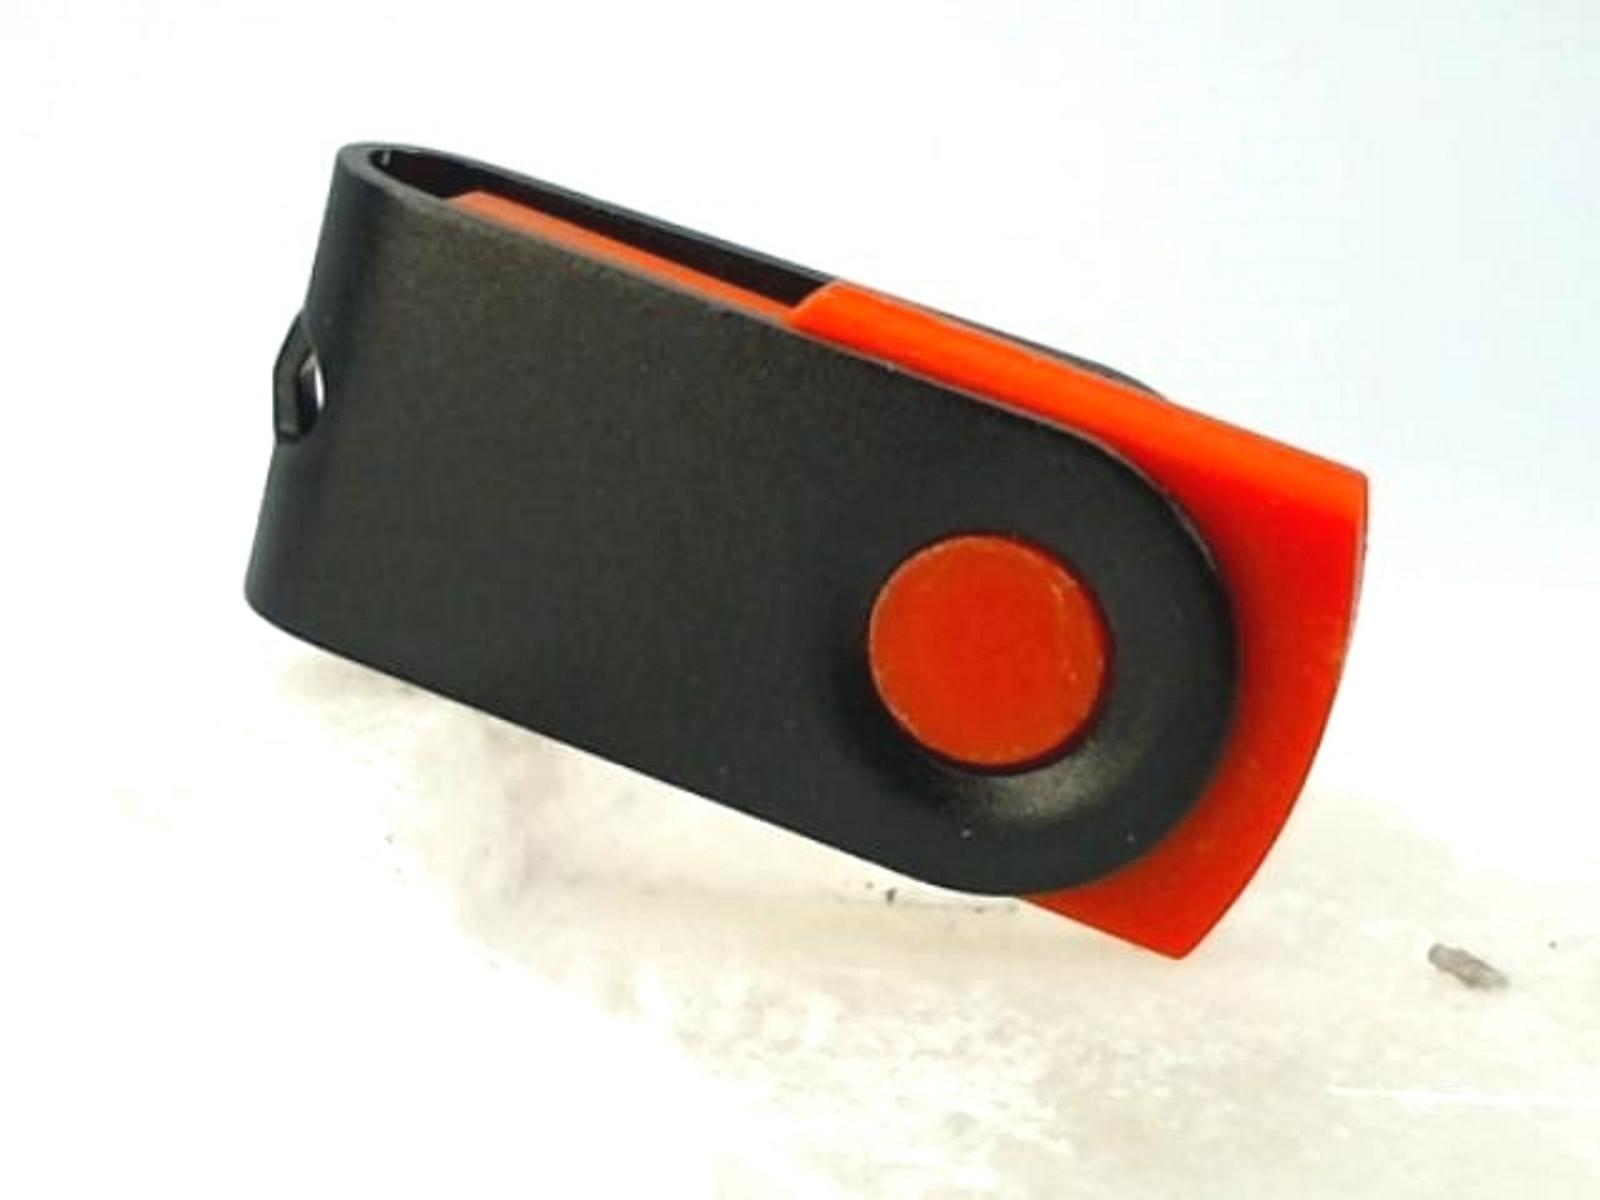 USB GERMANY ® GB) USB-Stick (Rot-Schwarz, MINI-SWIVEL 2